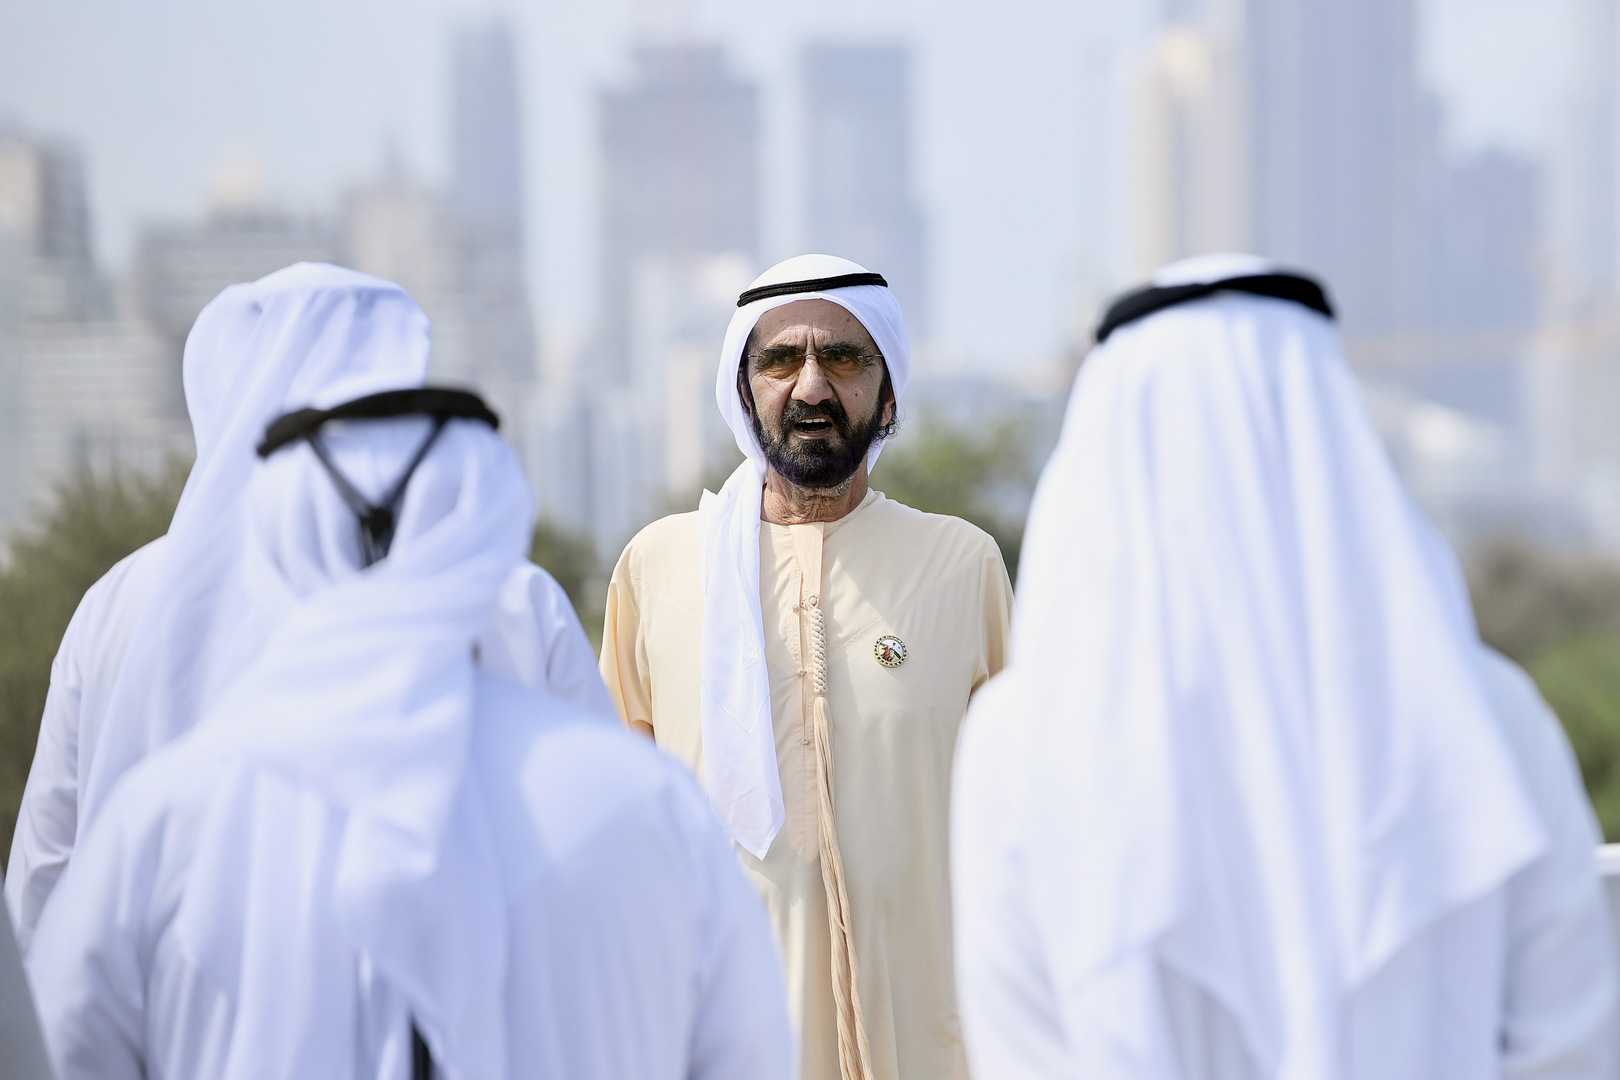 محمد بن راشد يصدر قانونا حول شعار إمارة دبي (صورة)